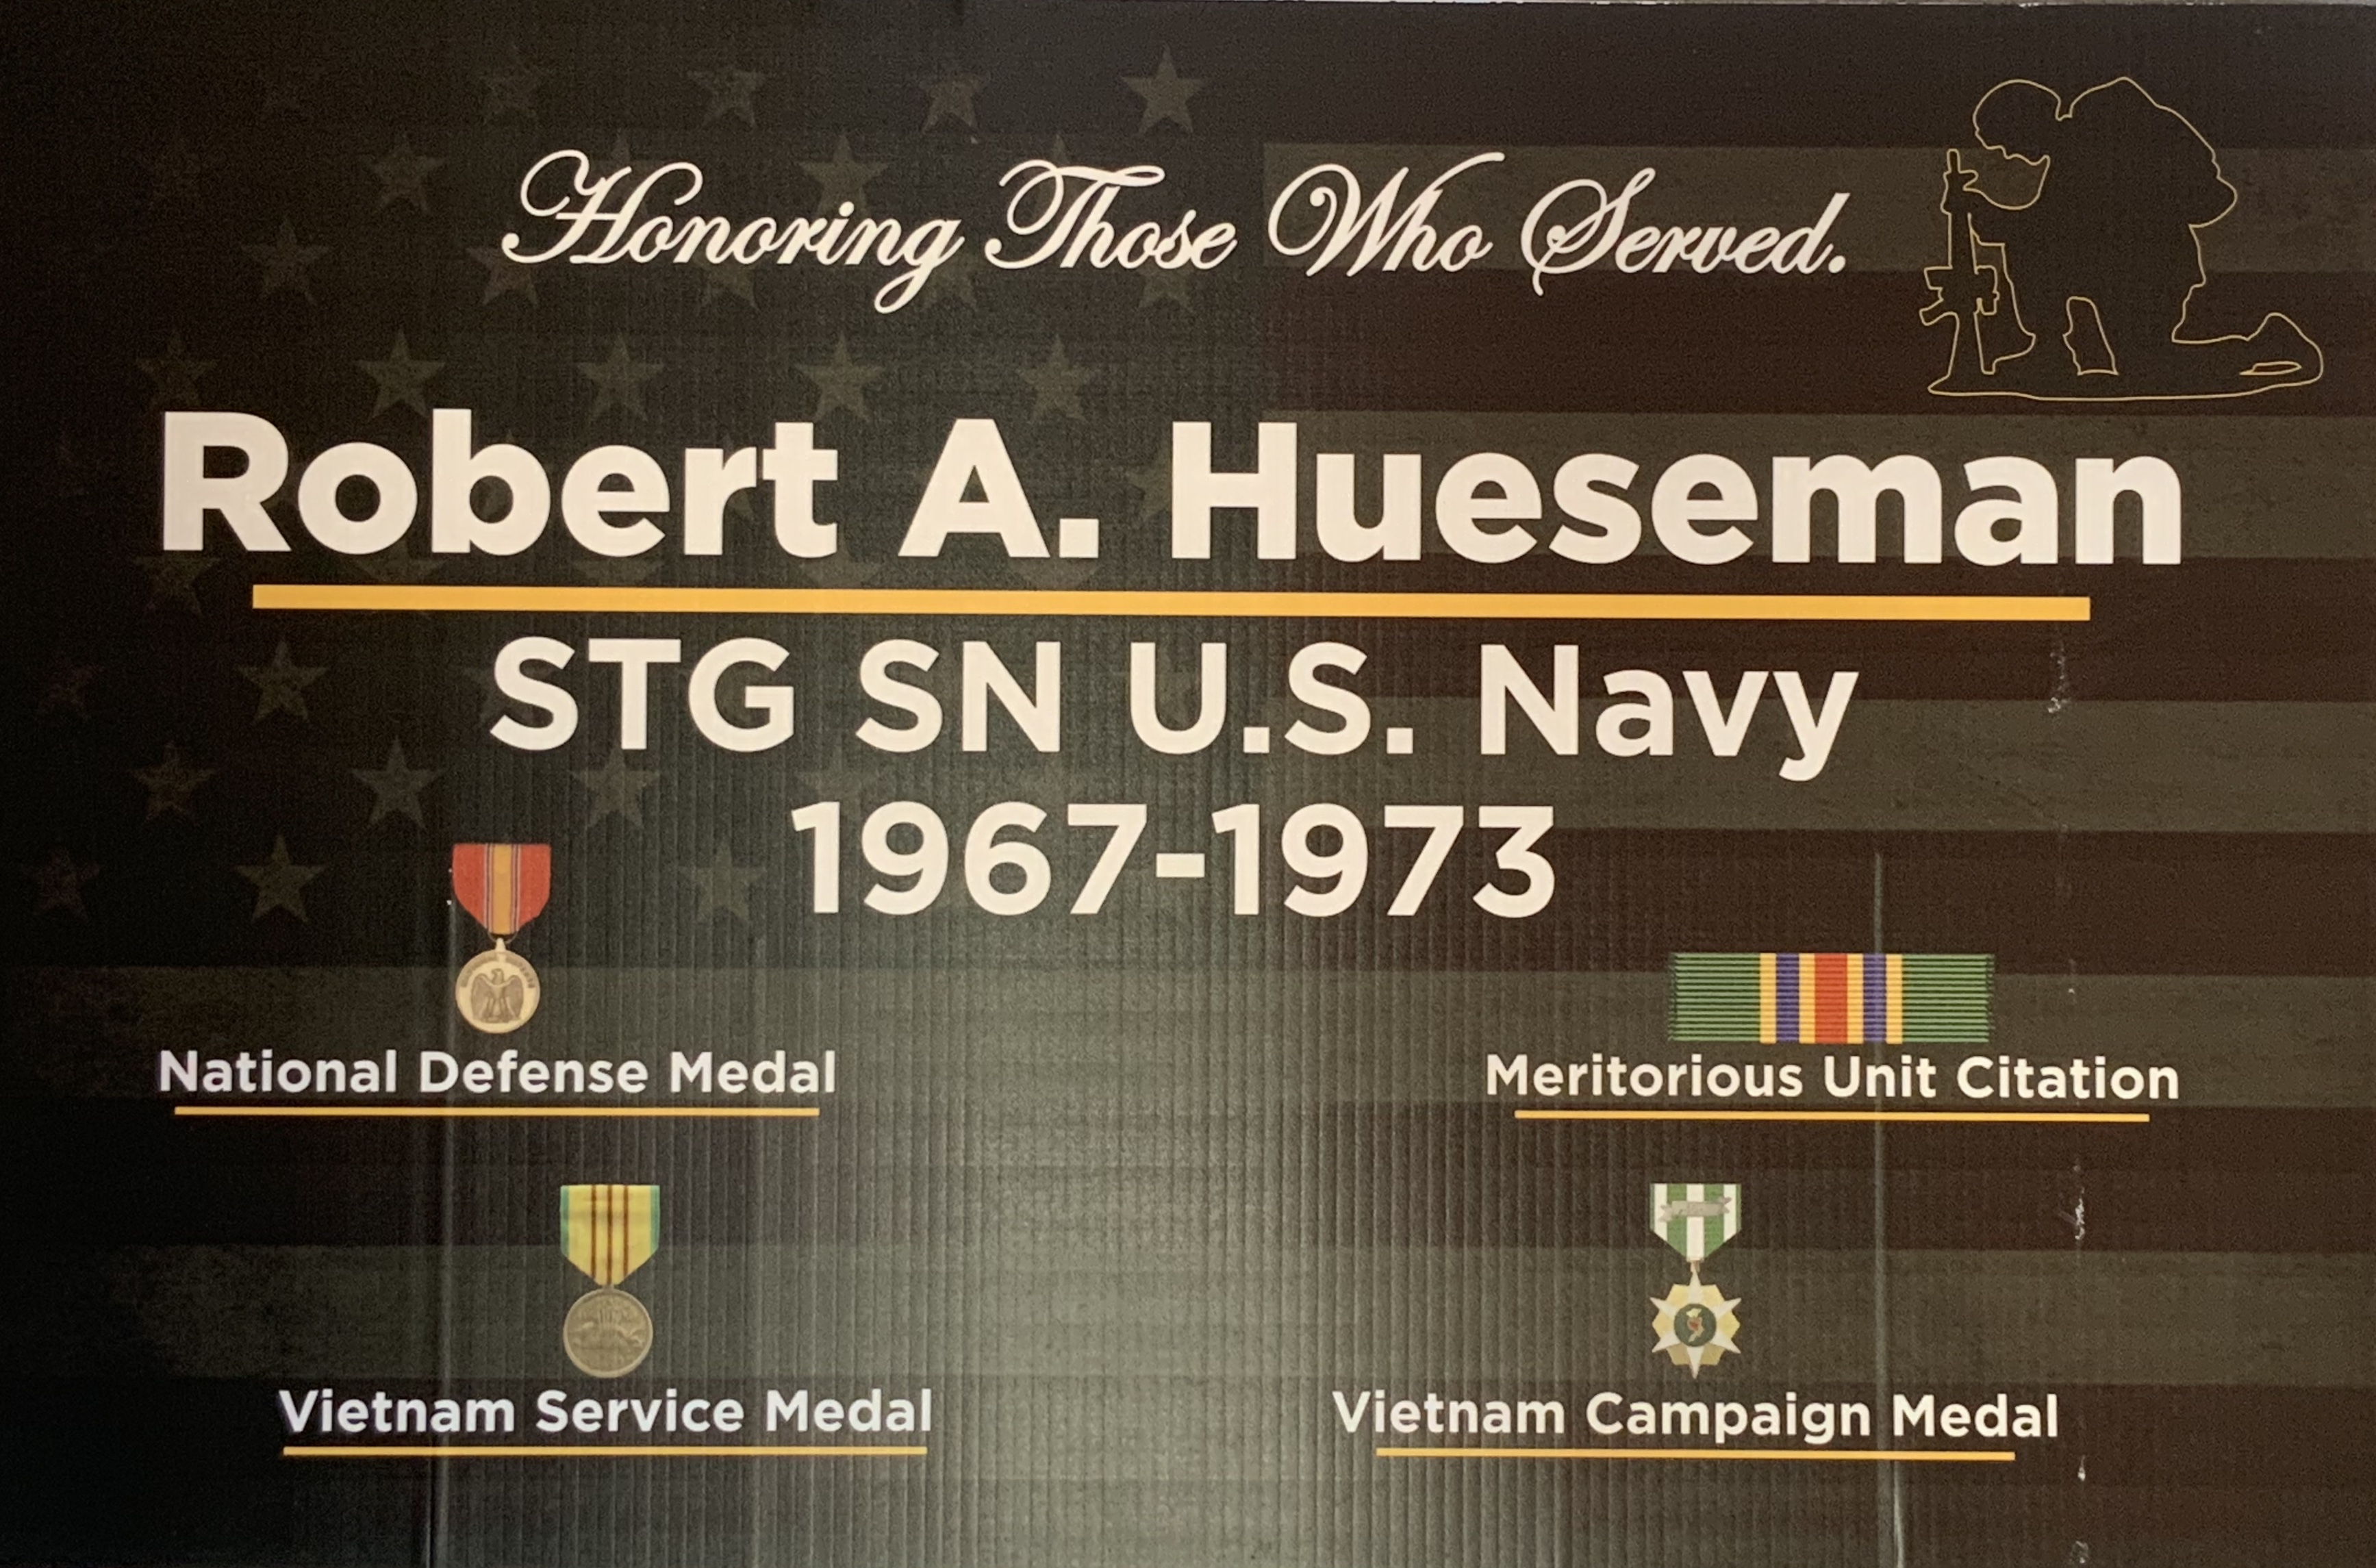 Robert A. Hueseman